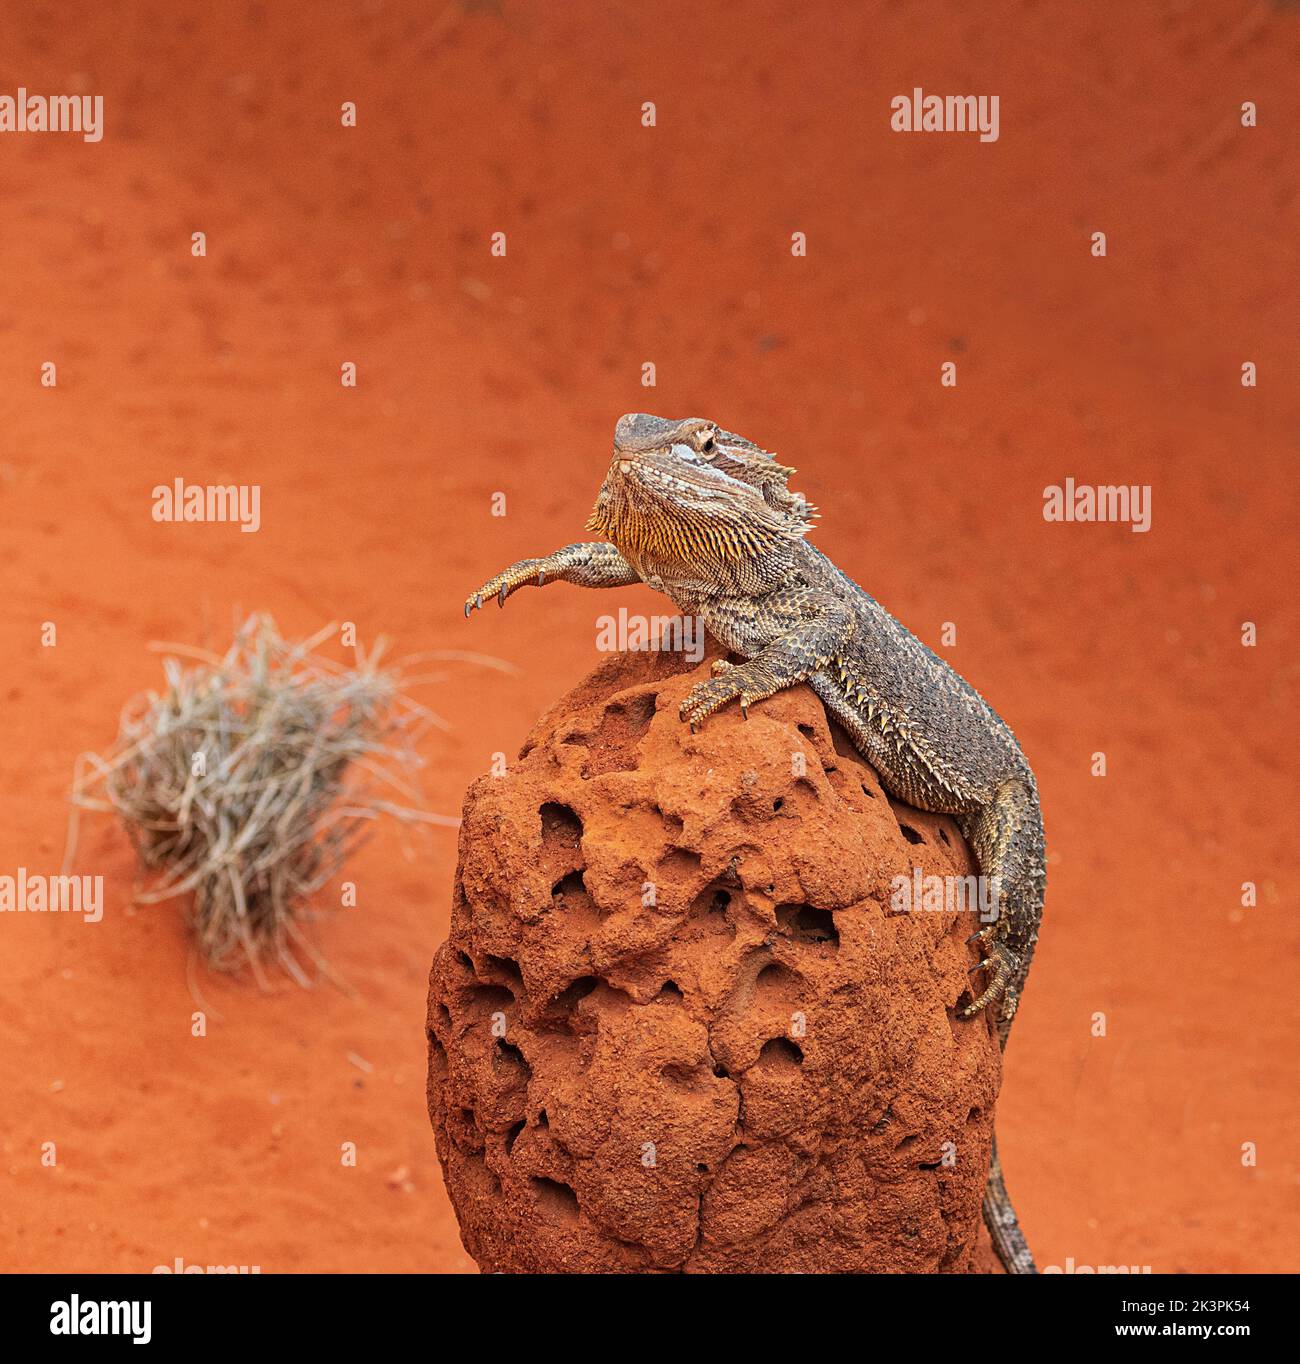 Il drago coriaceo (Pogona vitticeps) è una specie di lucertola di agamide che si trova in una regione arida a semiarida dell'Australia orientale e centrale Foto Stock